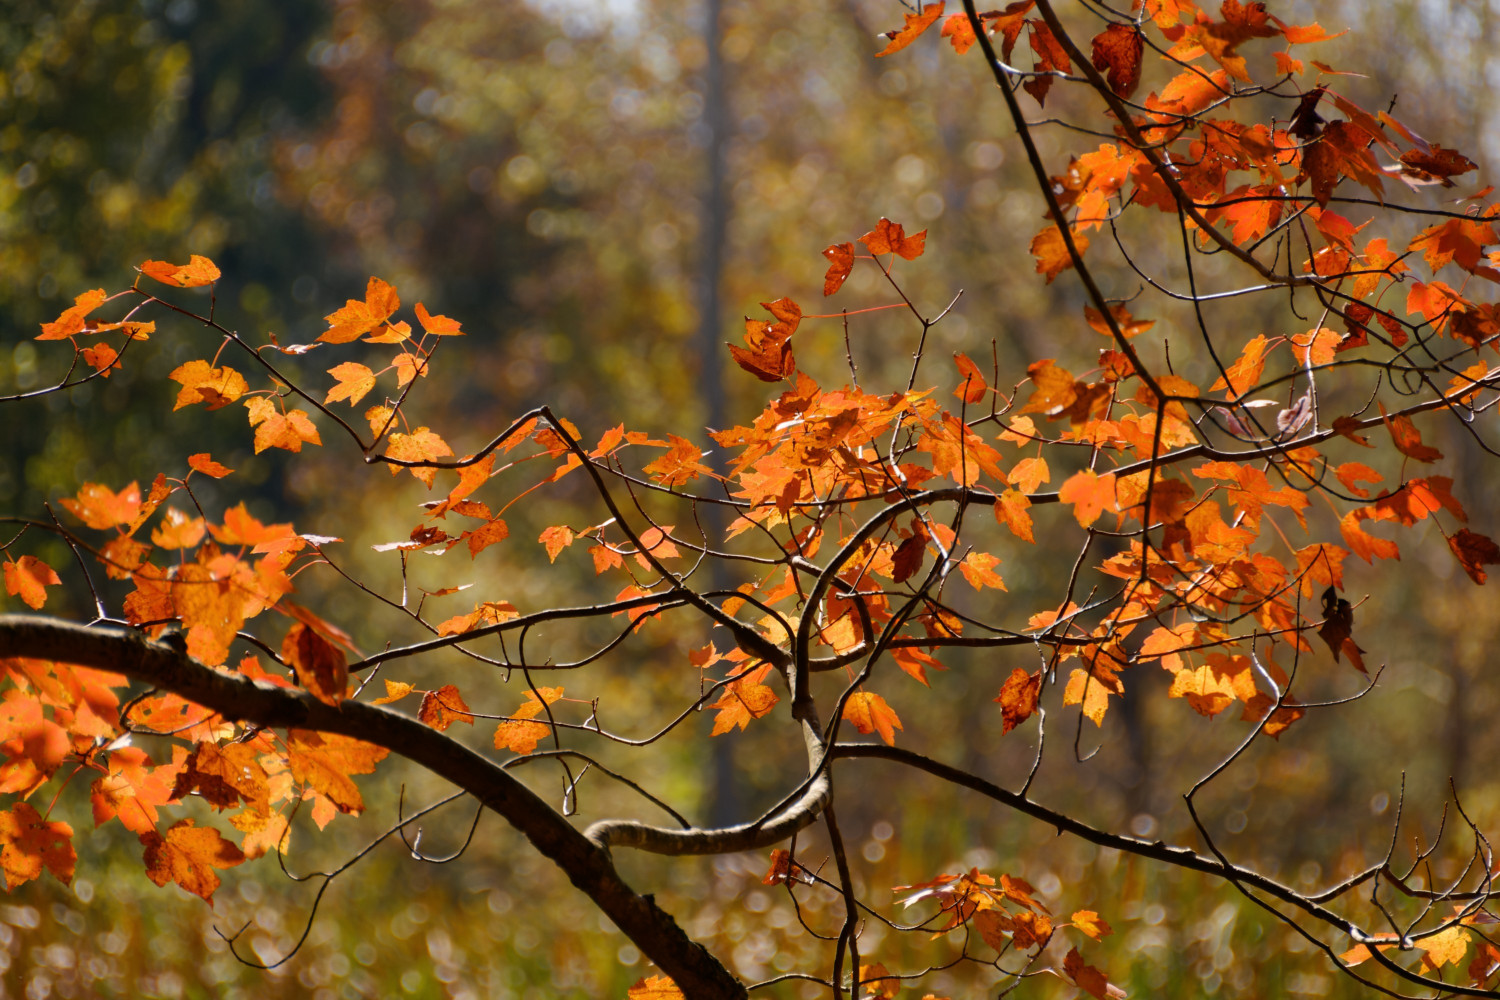 Autumn leaves on Abbotts Creek Trail